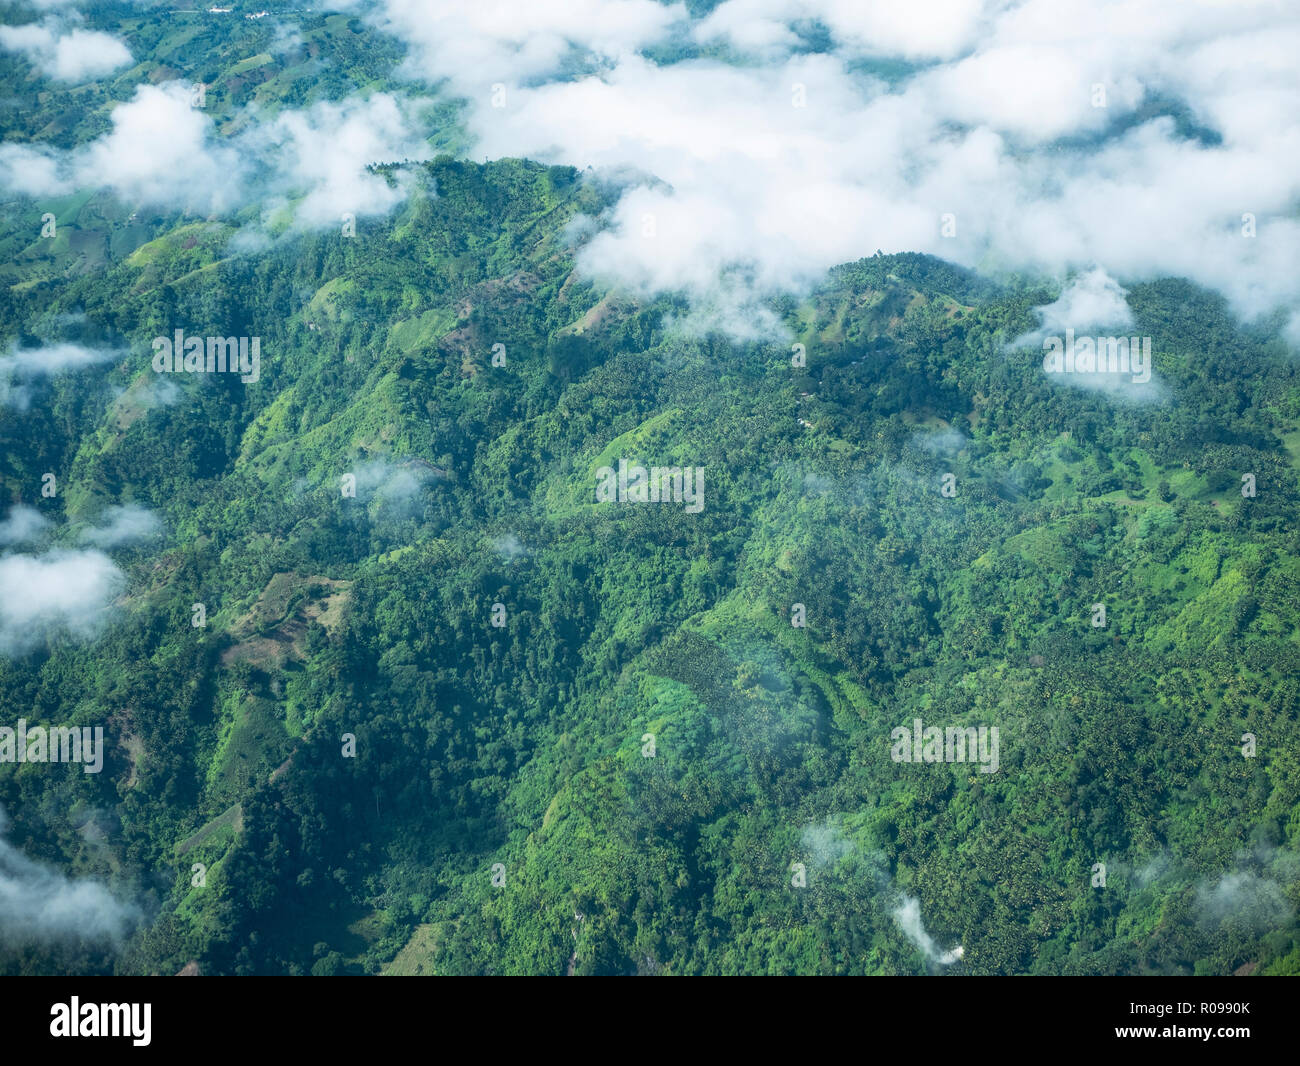 Hügeligen tropischen Landschaft in den Bergen von Mindanao, der südlichsten großen Insel der Philippinen. Stockfoto